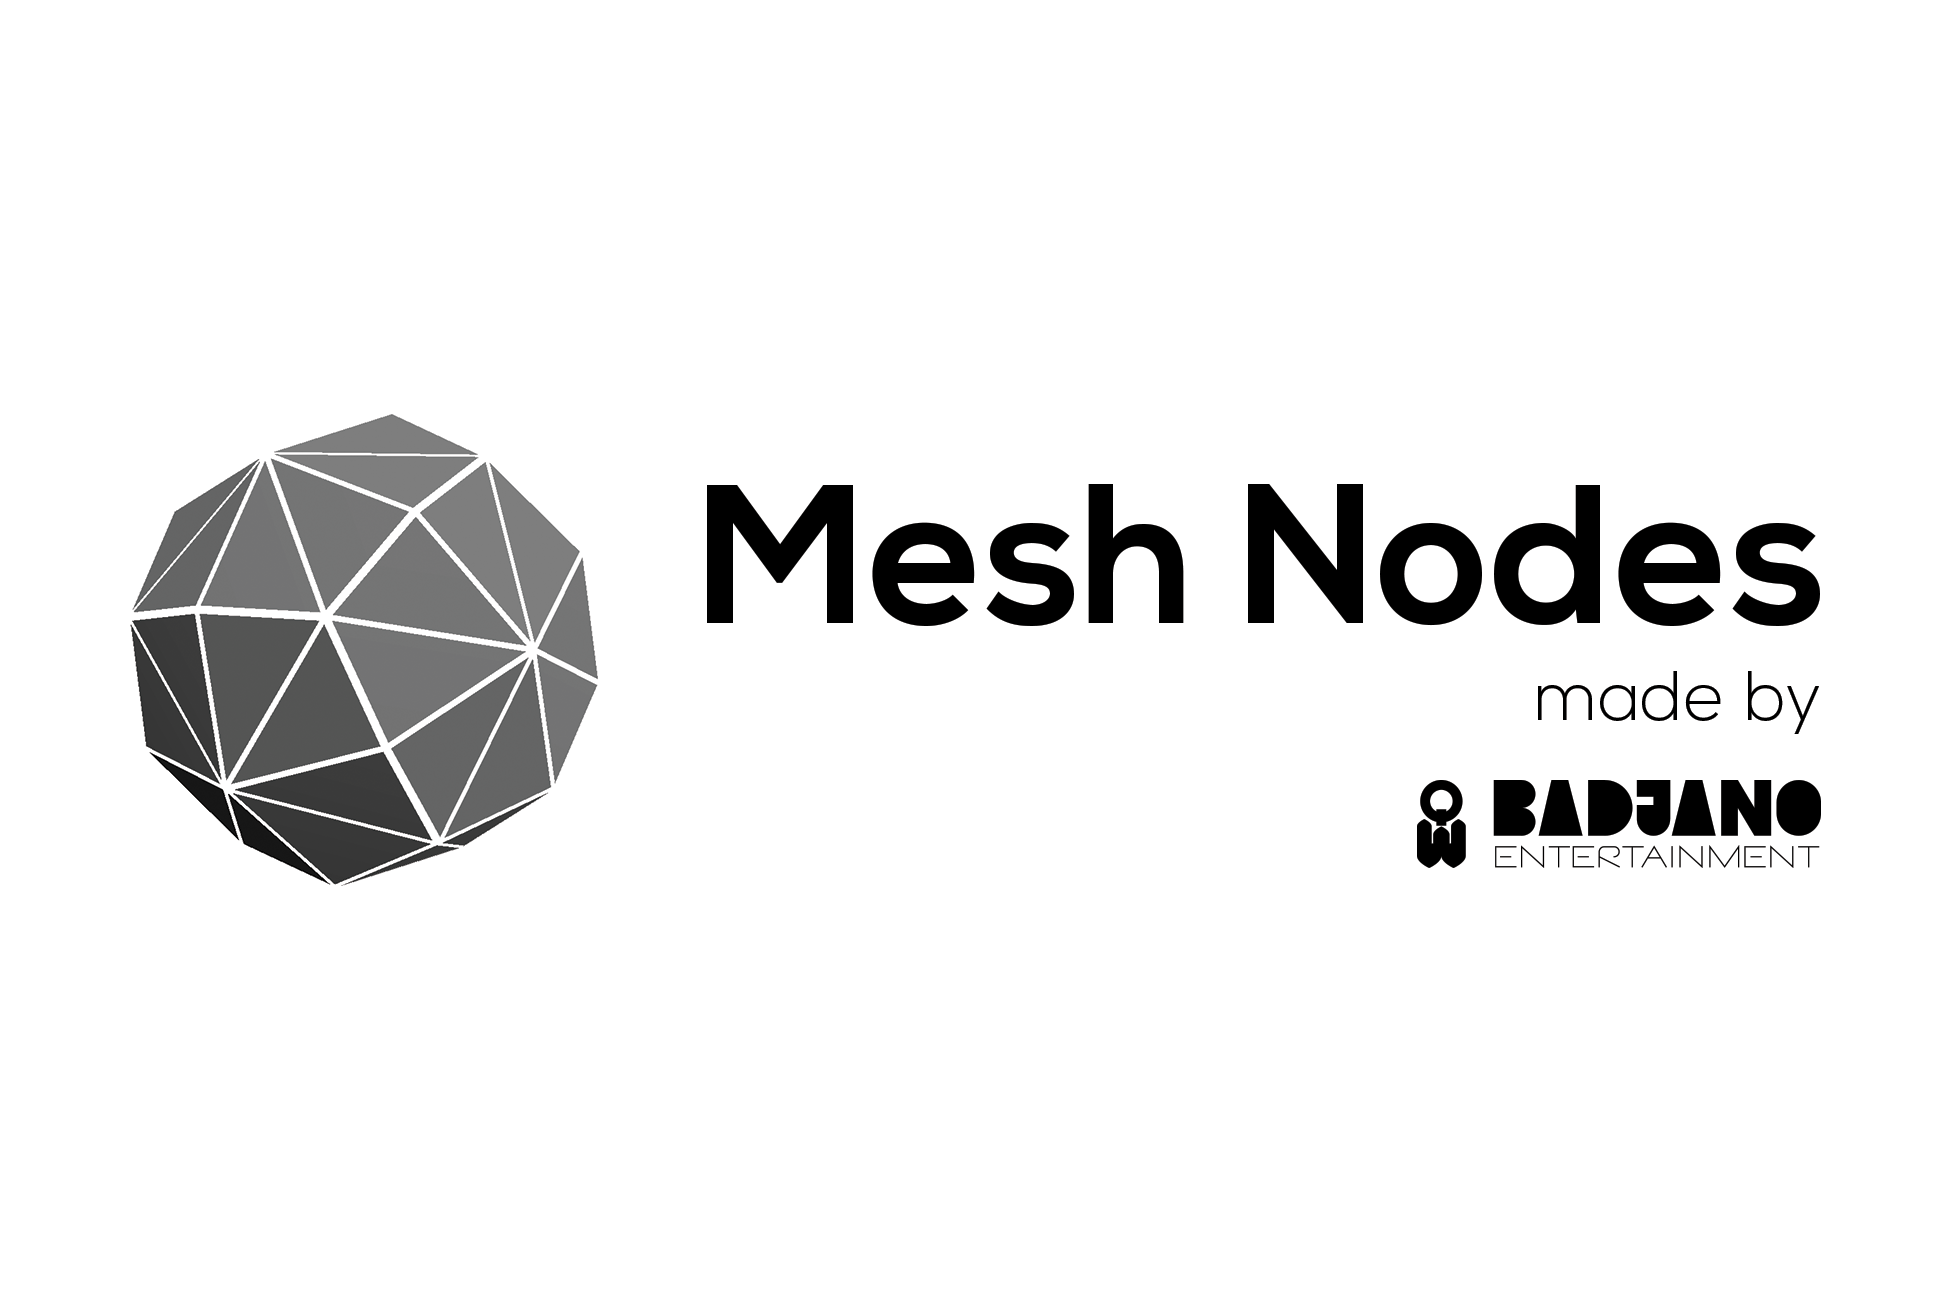 Mesh Nodes